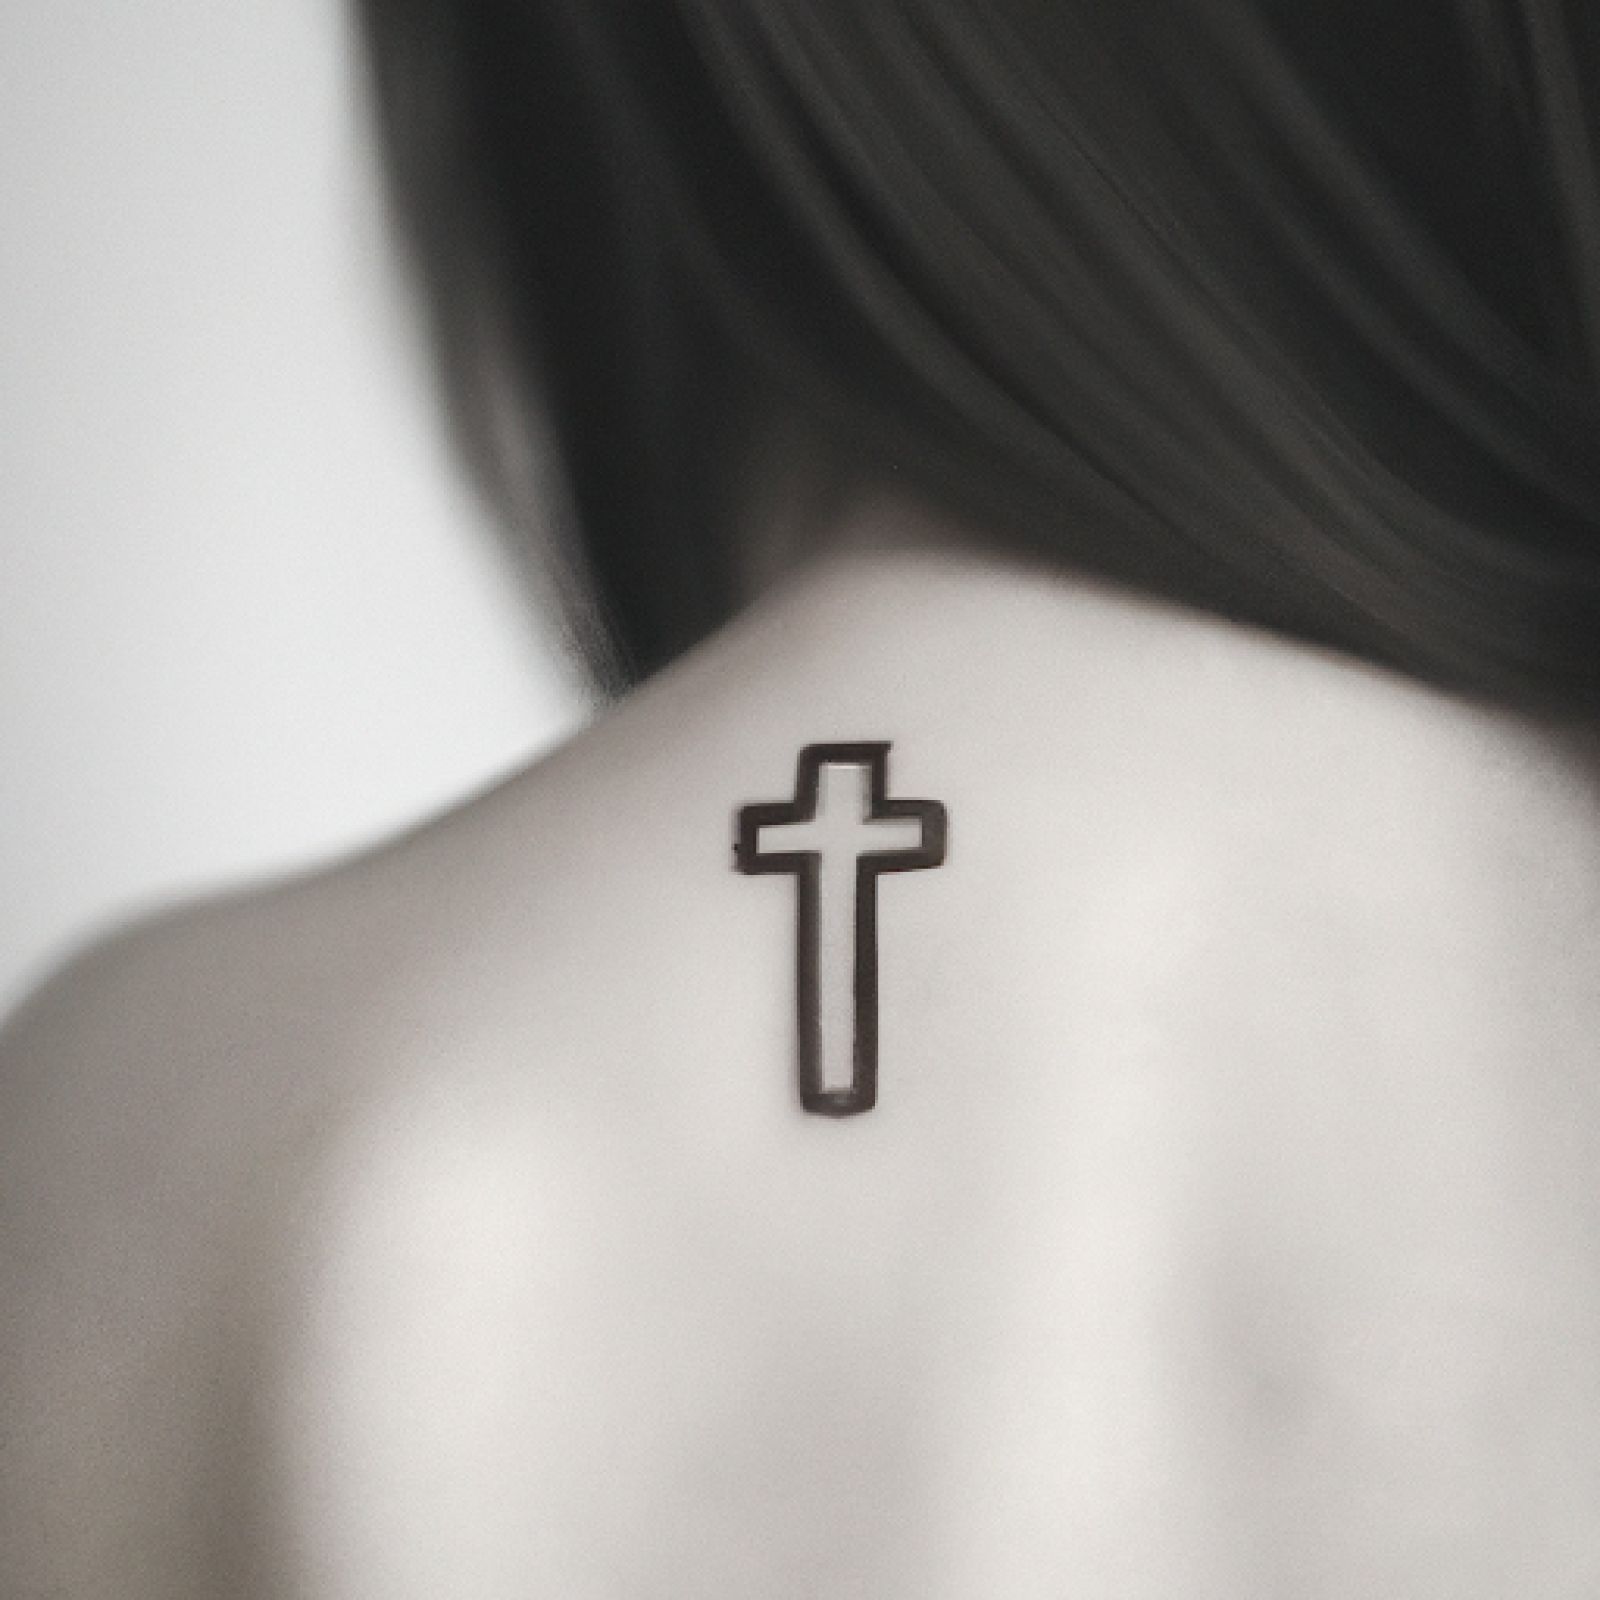 Tattoo of jesus on shoulder for